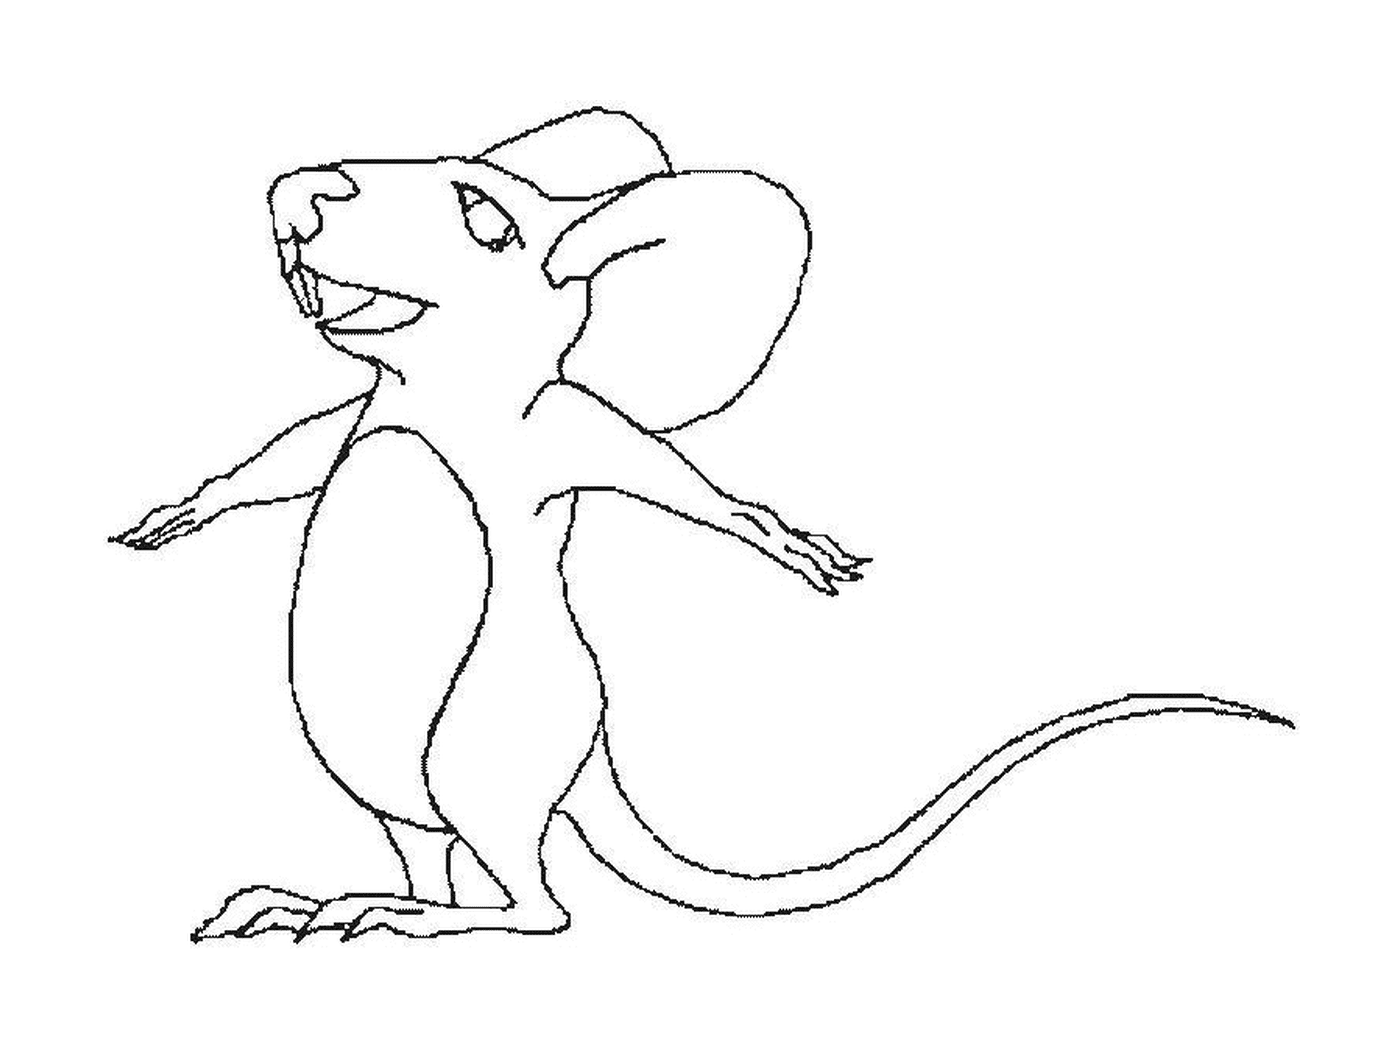   Une souris avec les bras tendus 